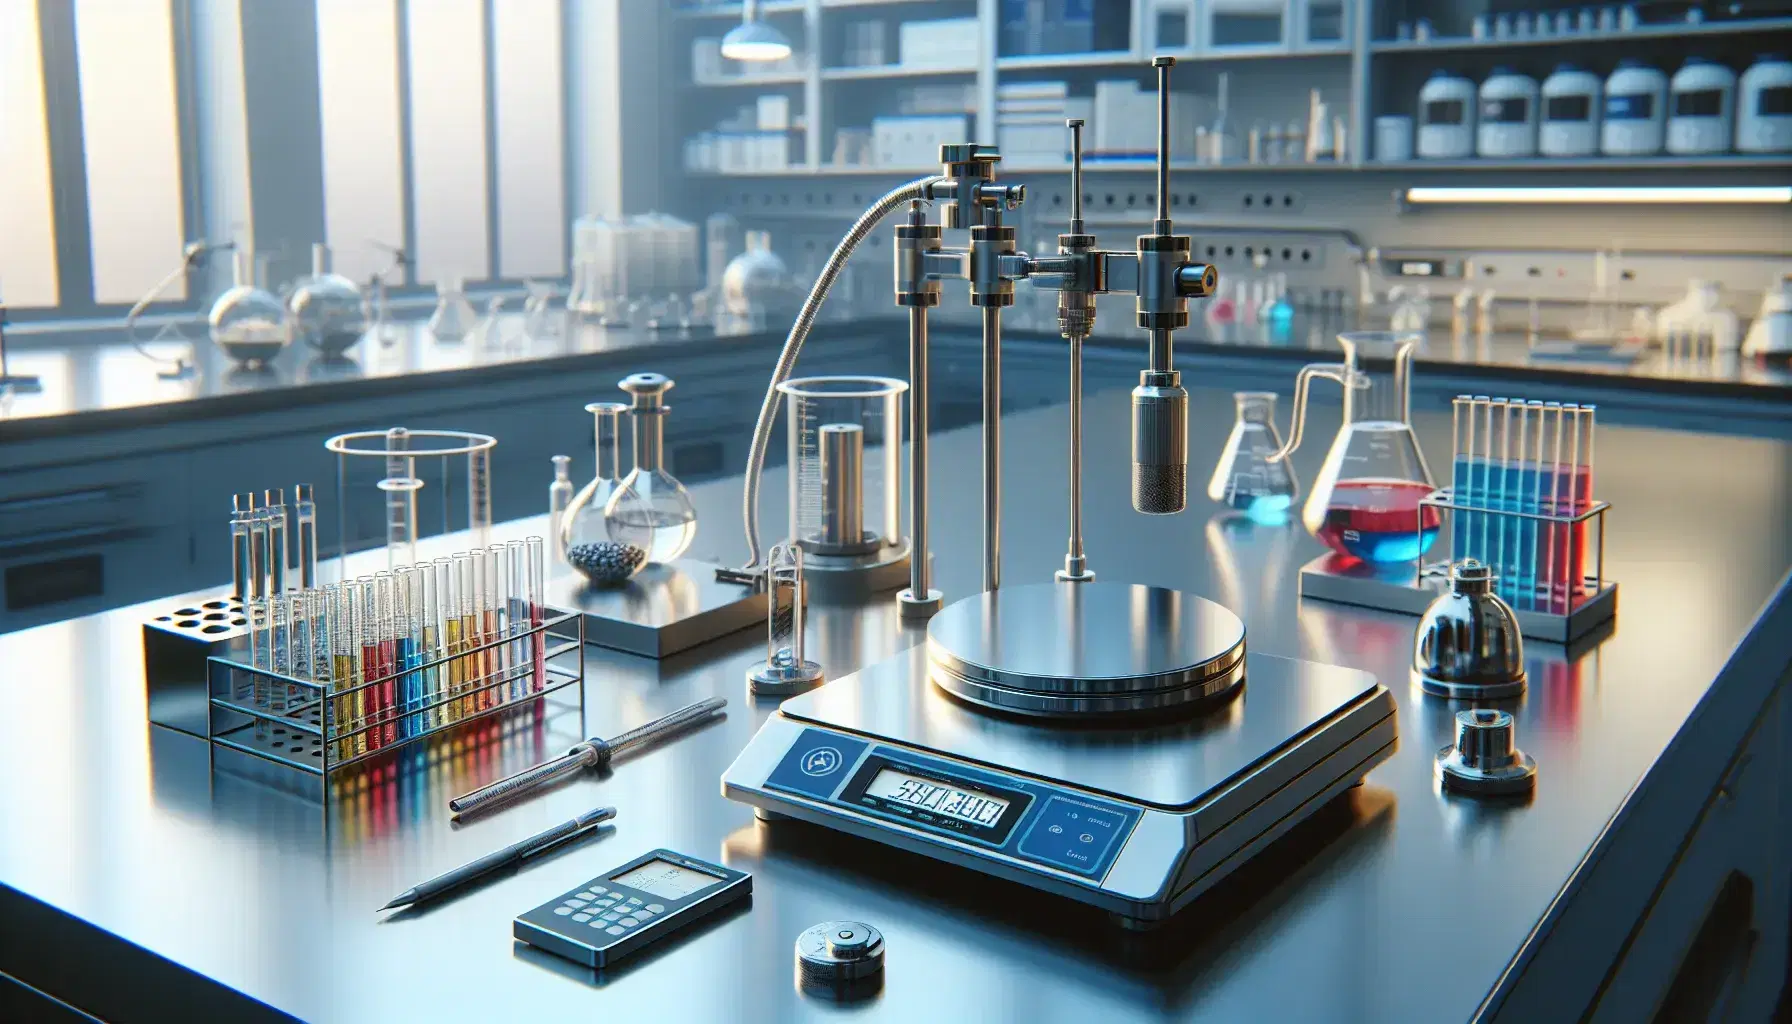 Laboratorio scientifico moderno con bilancia analitica, provette colorate, calorimetro e cilindro di vetro, illuminazione a LED, senza etichette visibili.